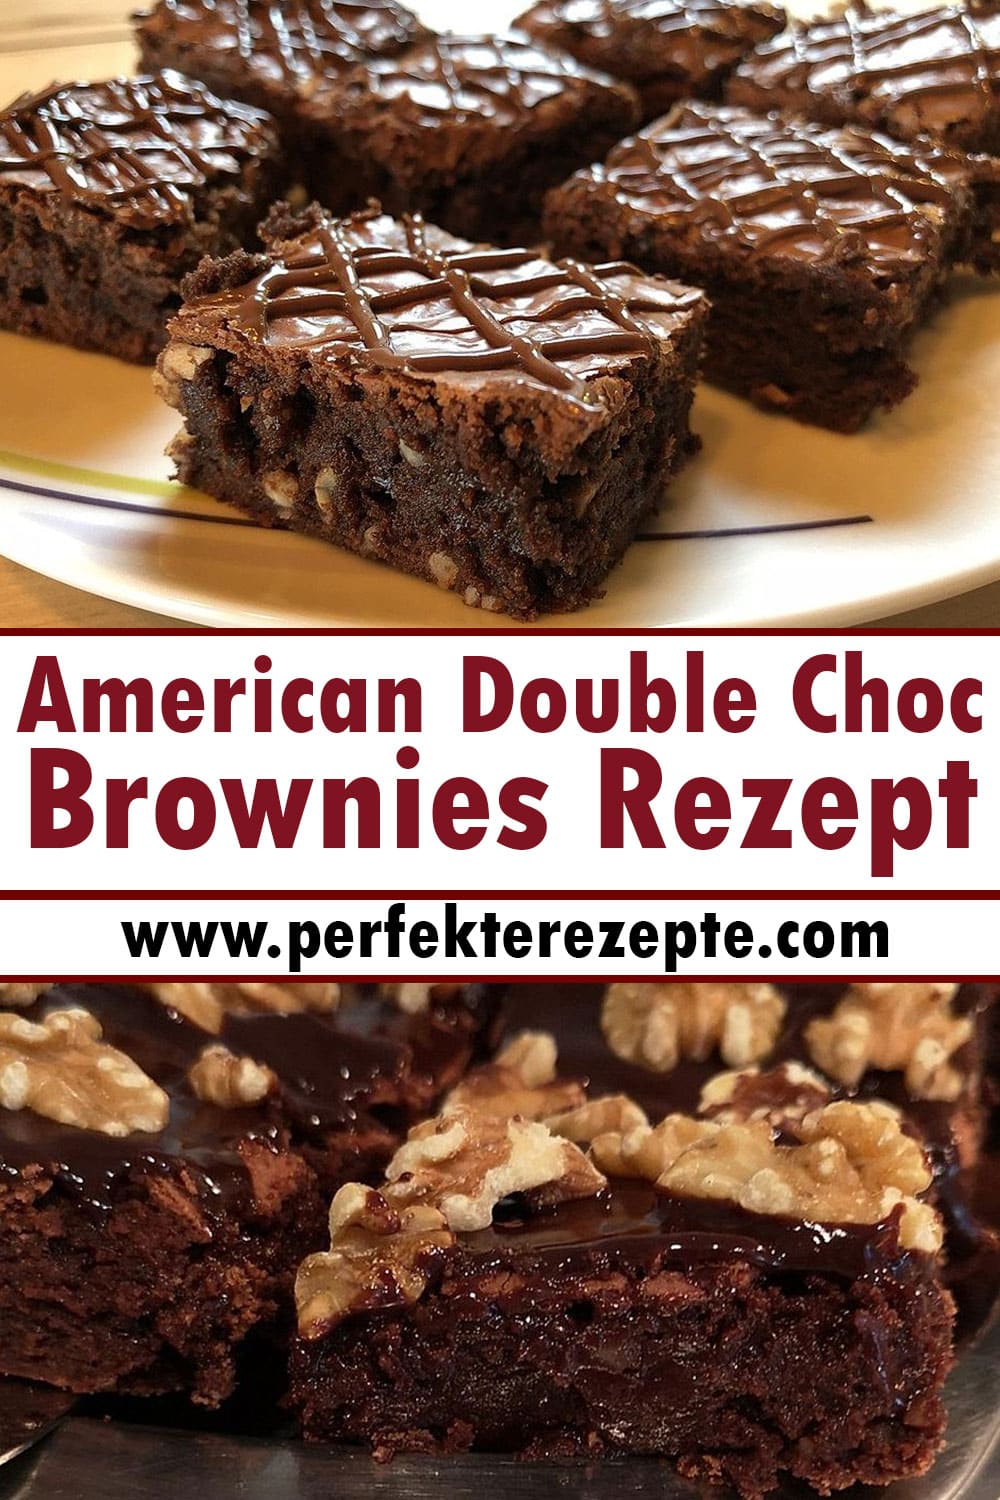 American Double Choc Brownies Rezept - Richtig feuchte und klebrige Brownies